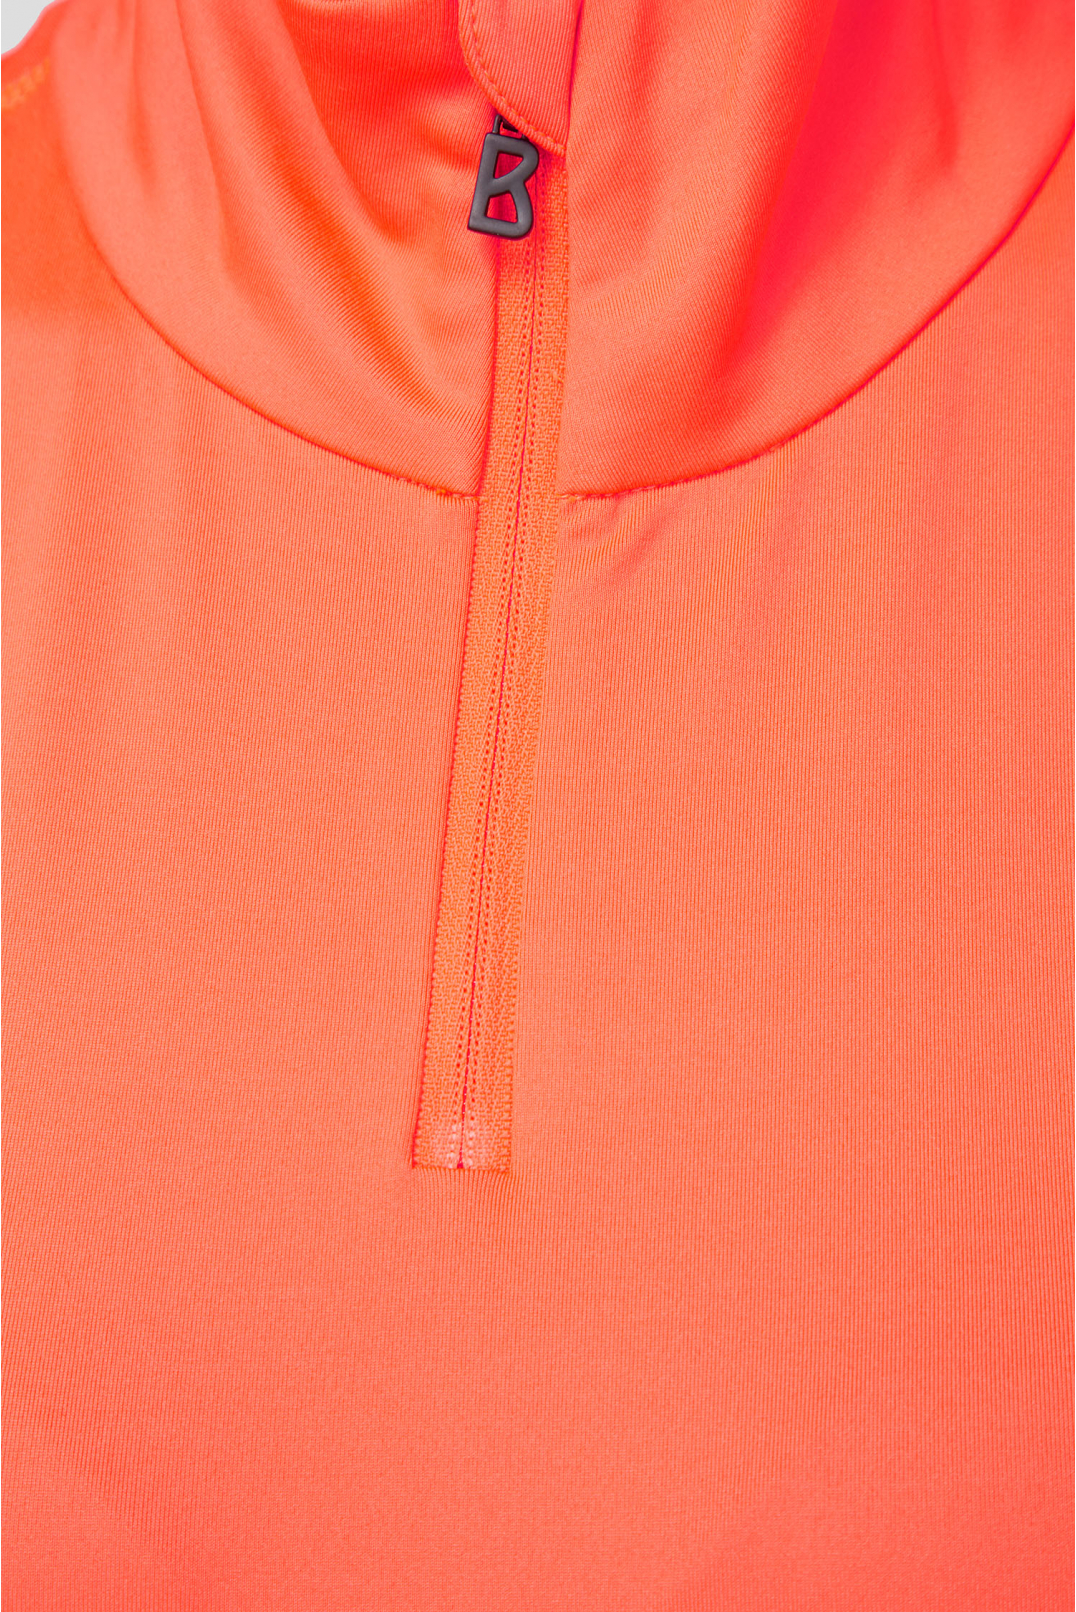 Женская оранжевая спортивная кофта - 3